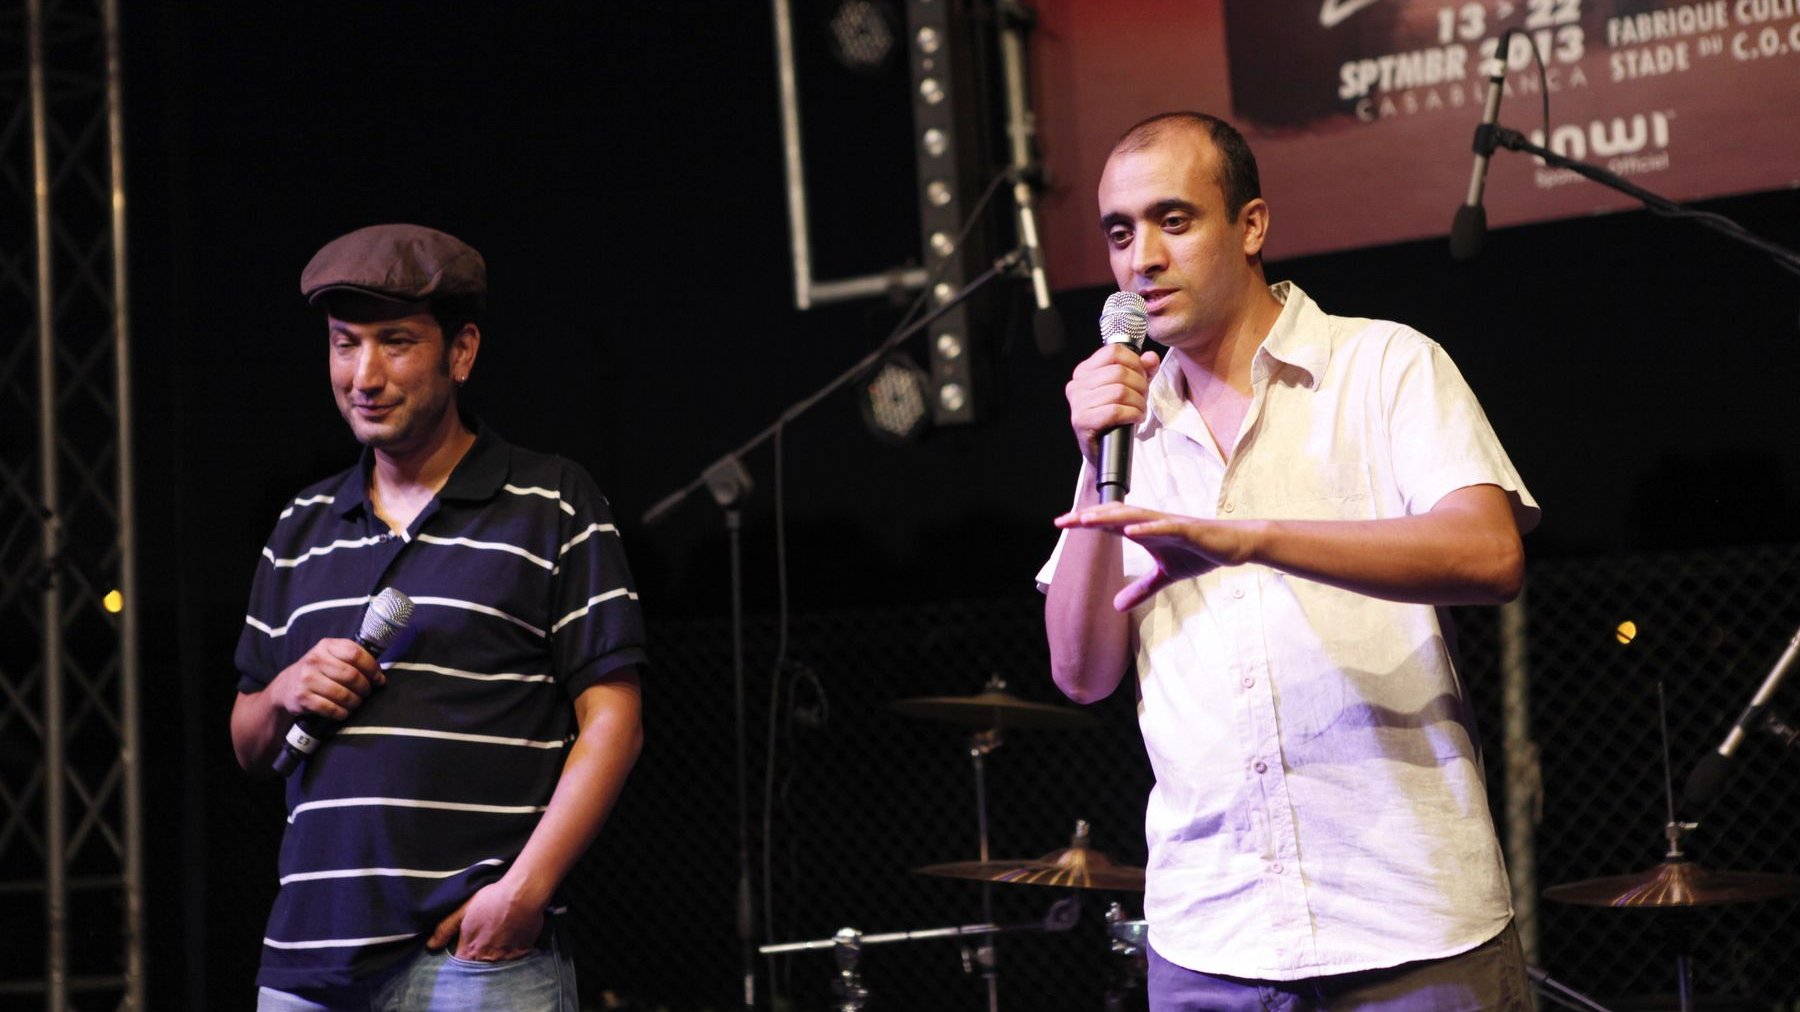 هشام باحو ومحمد المغراوي "مومو" أثناء الإعلان عن بداية حفل "بولفار" يوم أمس الثلاثاء
